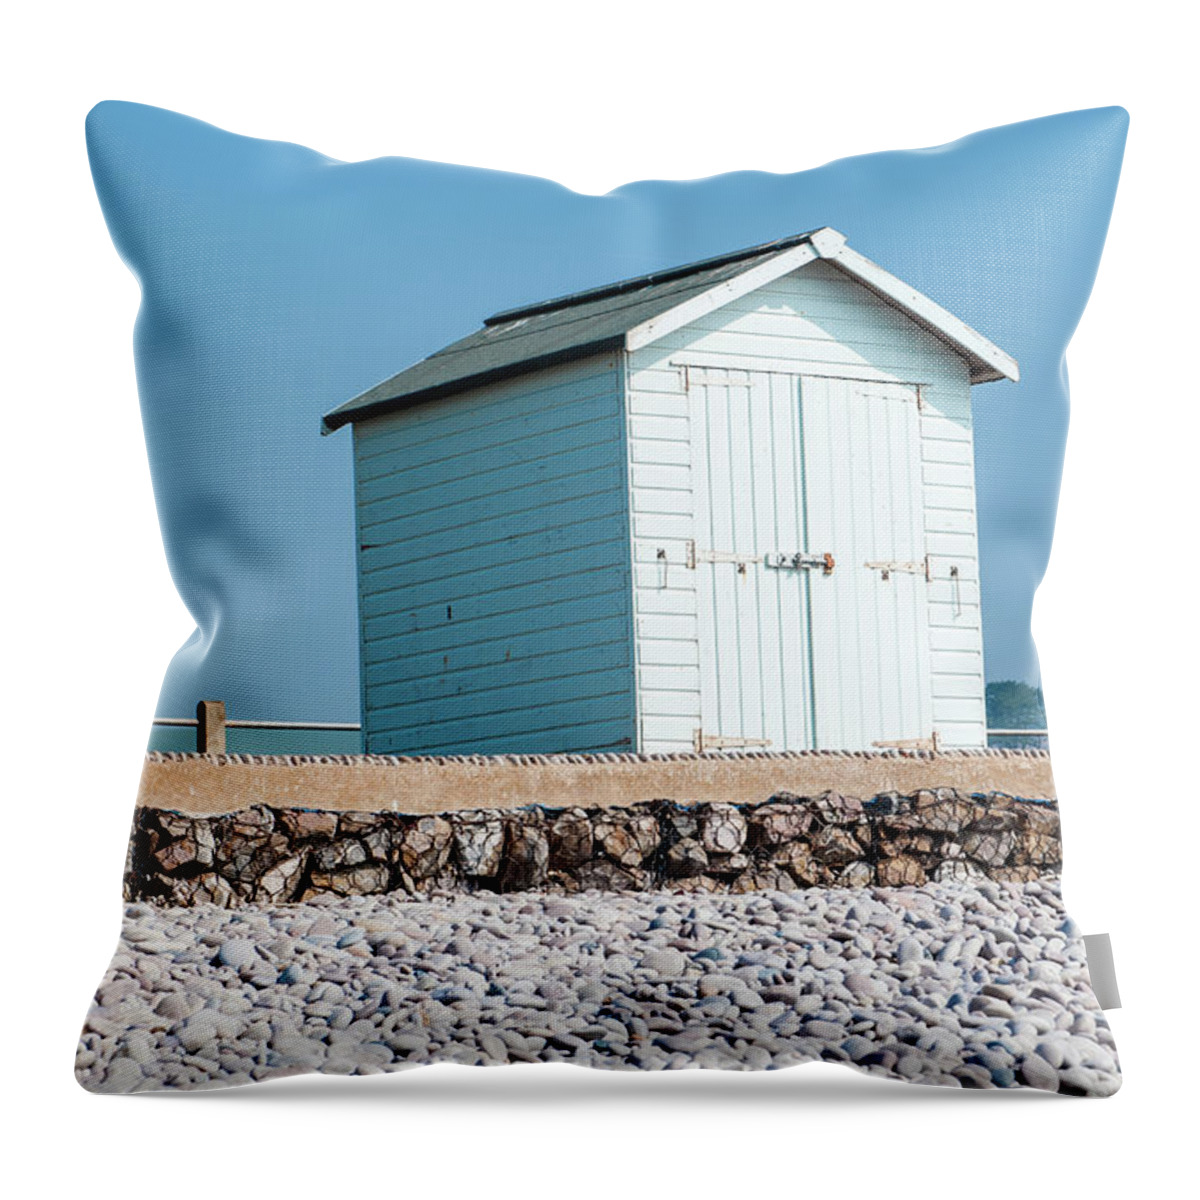 Beach Throw Pillow featuring the photograph Blue Beach Hut by Helen Jackson